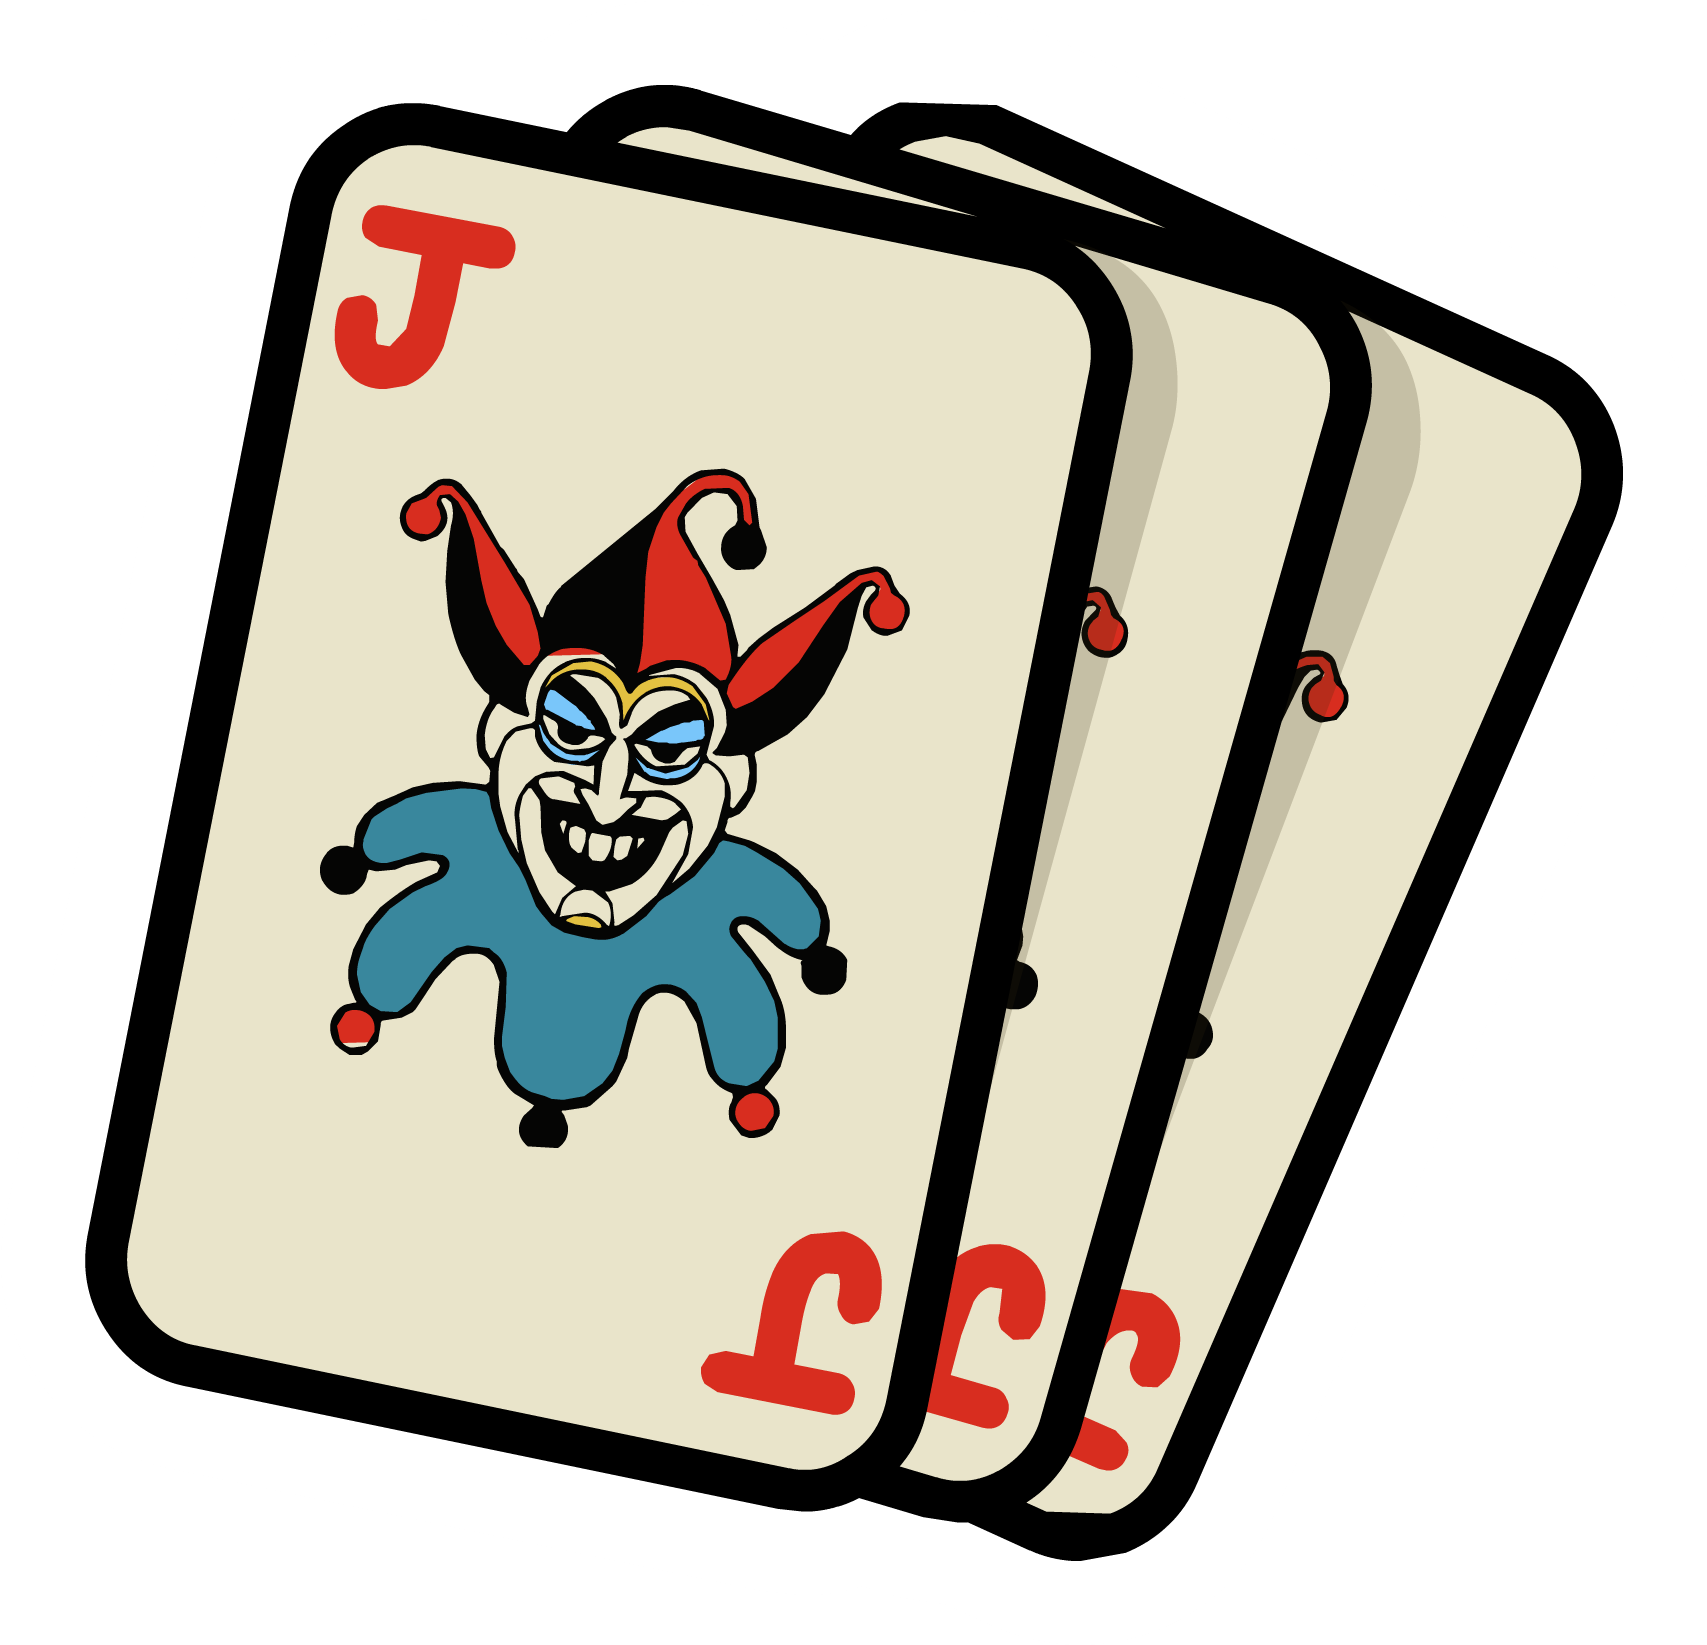 Joker Pic Card HQ Image Free PNG Image